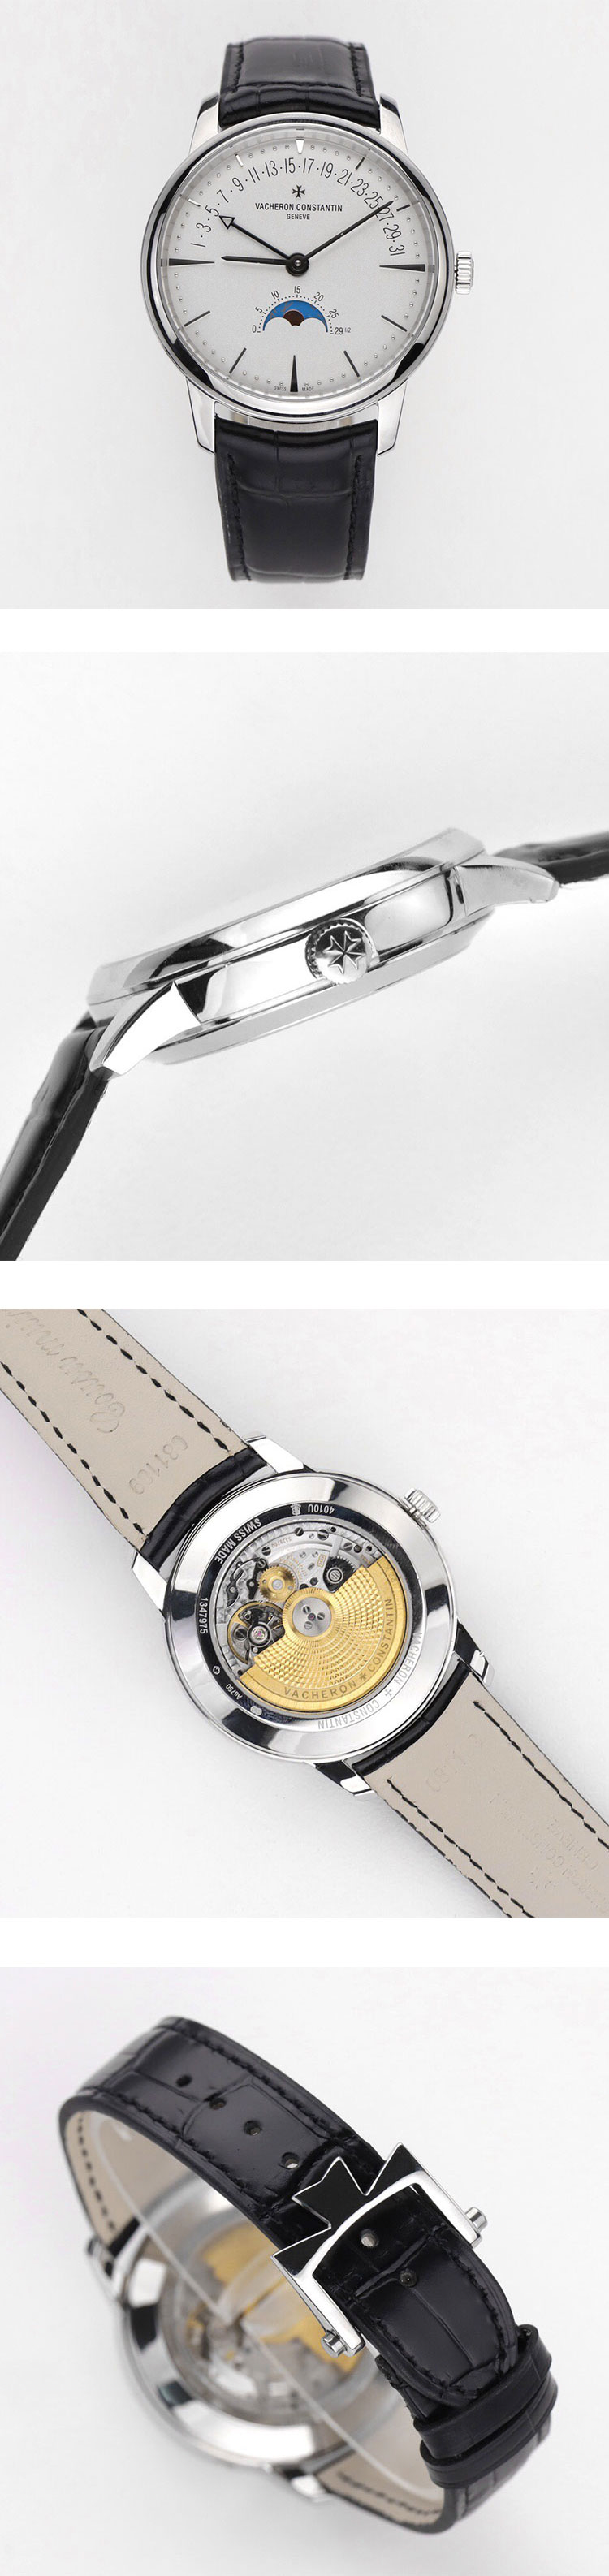 メンズ腕時計 ヴァシュロン・コンスタンタンコピー ムーンフェイズ&レトログラード・デイト 4010U/000G-B330 ホワイト